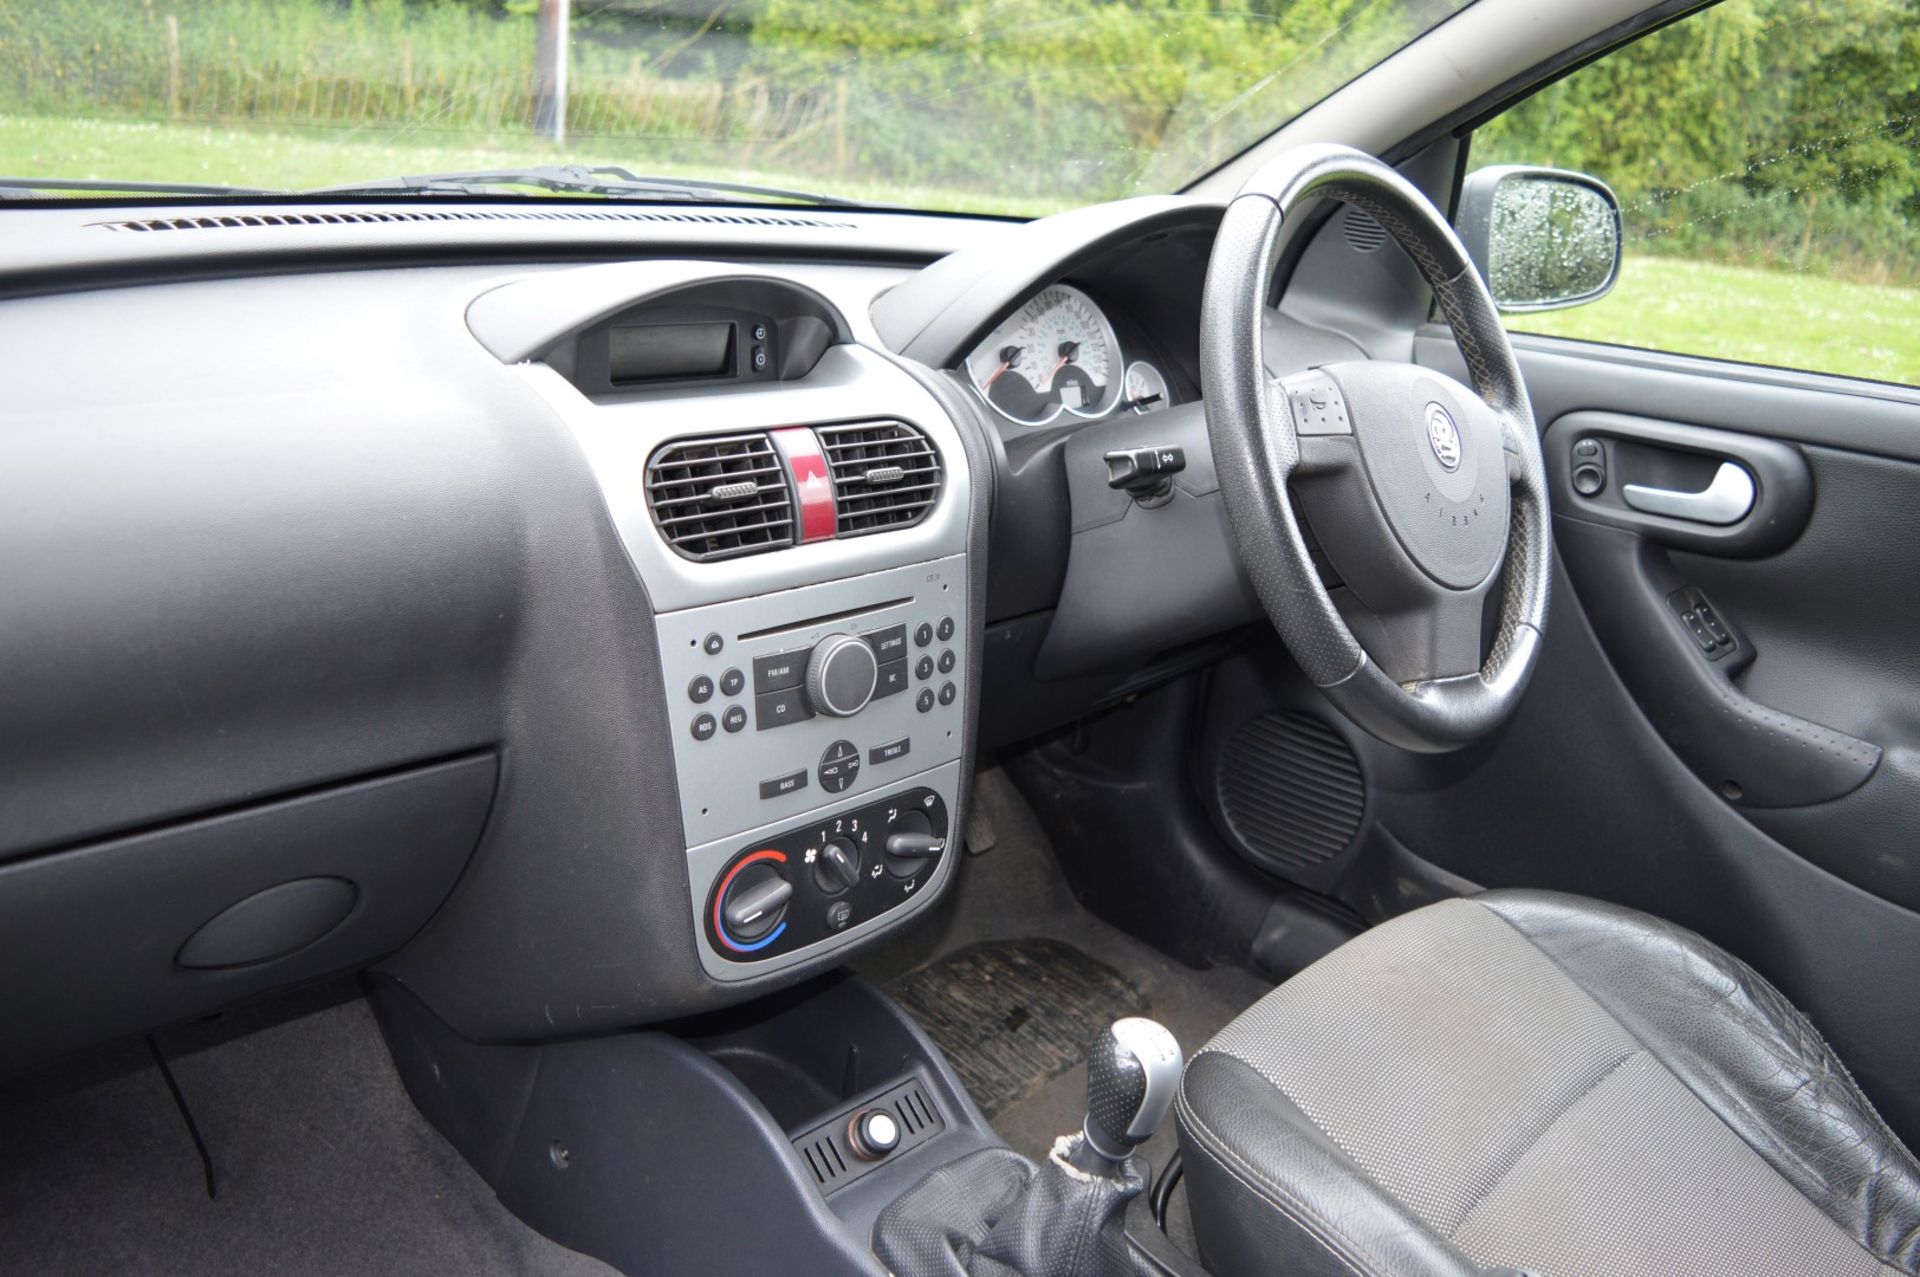 1 x Vauxhall Corsa SXI+ 3 Door Hatchback 1.2 - 2006 56 Plate - 78,000 Miles - MOT June 2018 - Image 29 of 36